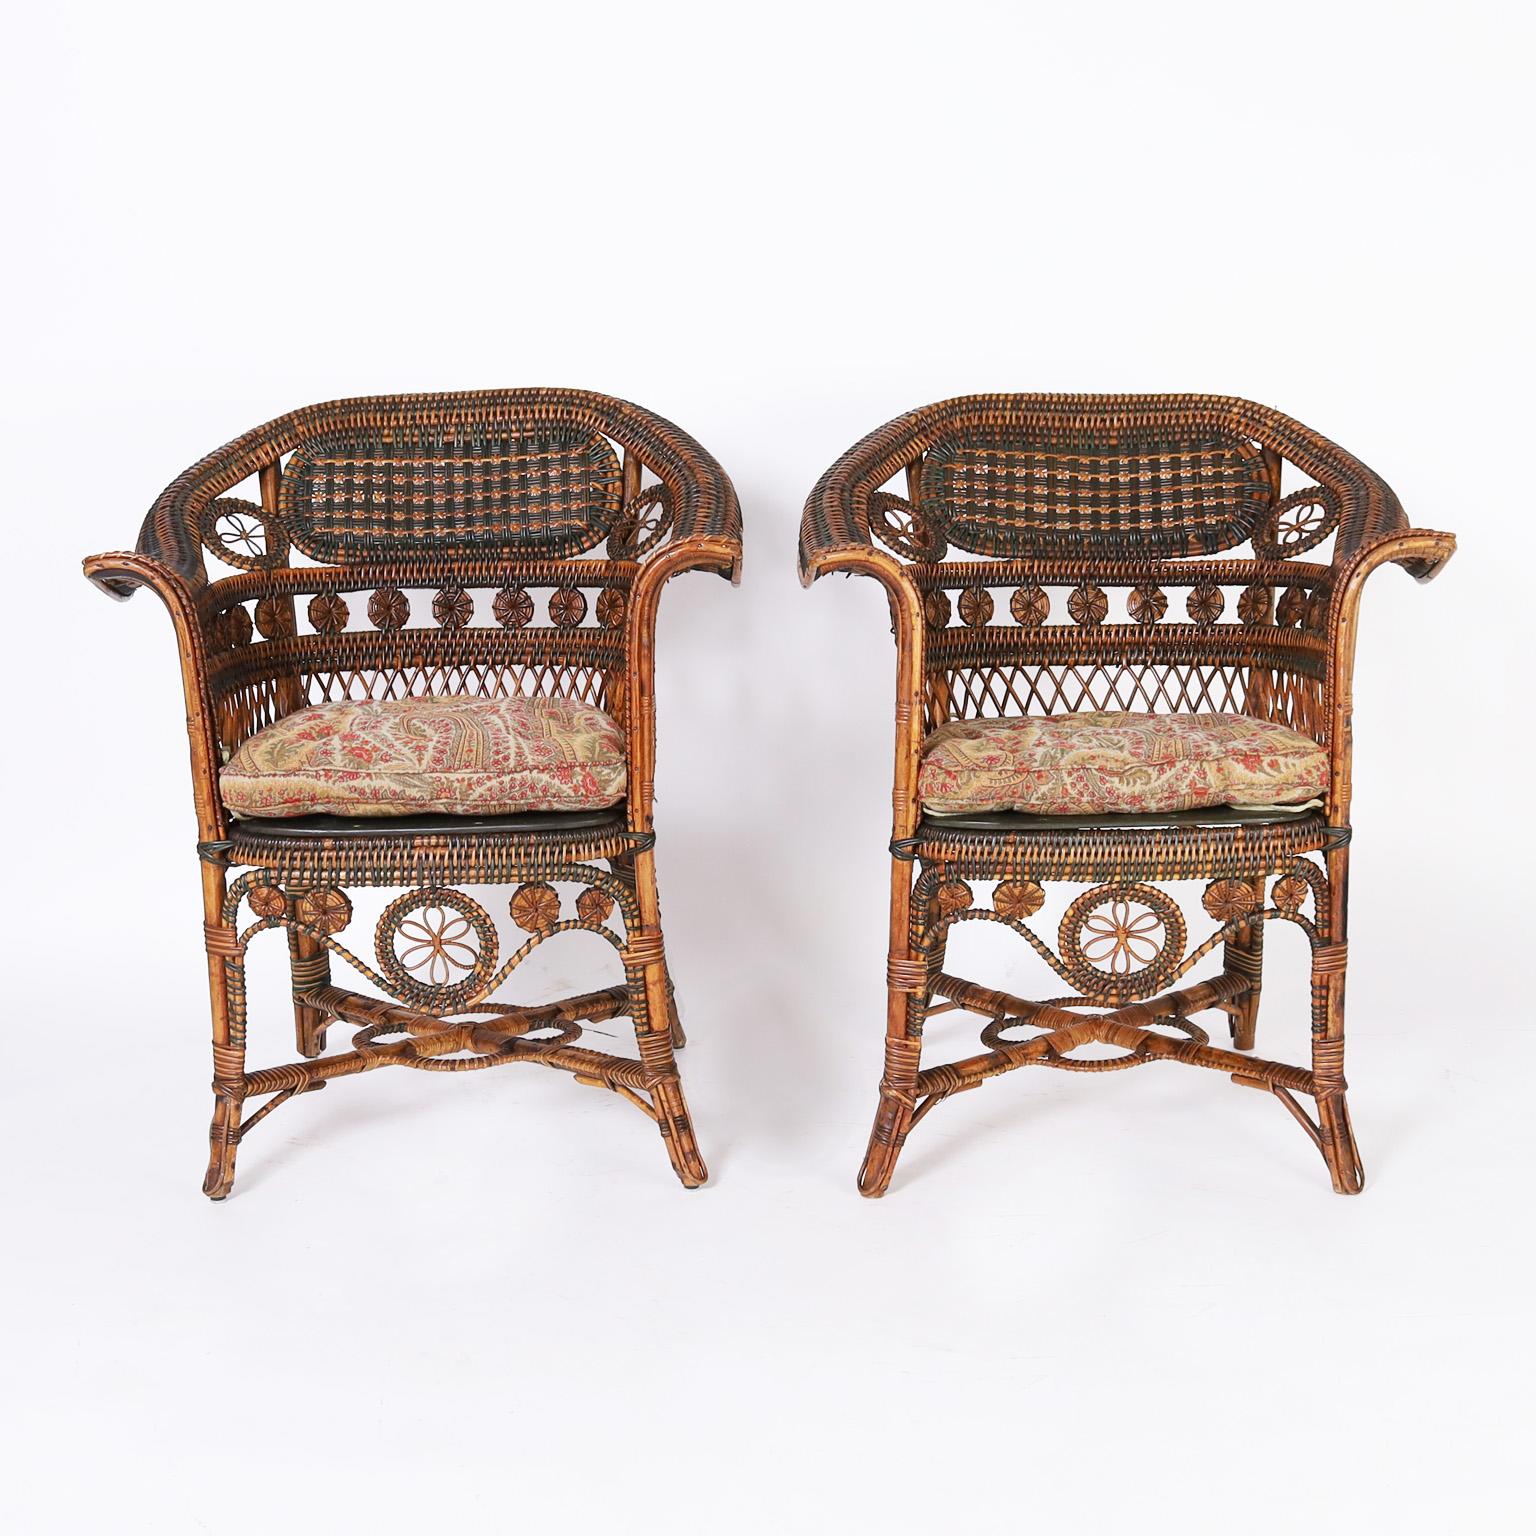 Beeindruckendes Paar antiker französischer Rattan- und Schilf-Café-Stühle mit gebogenen Holzrahmen, die mit bemaltem und mit natürlichem Schilf umwickeltem Rattan verziert sind, in einer anmutigen Form mit stabilen Querstreben. Unterzeichnet Pierre